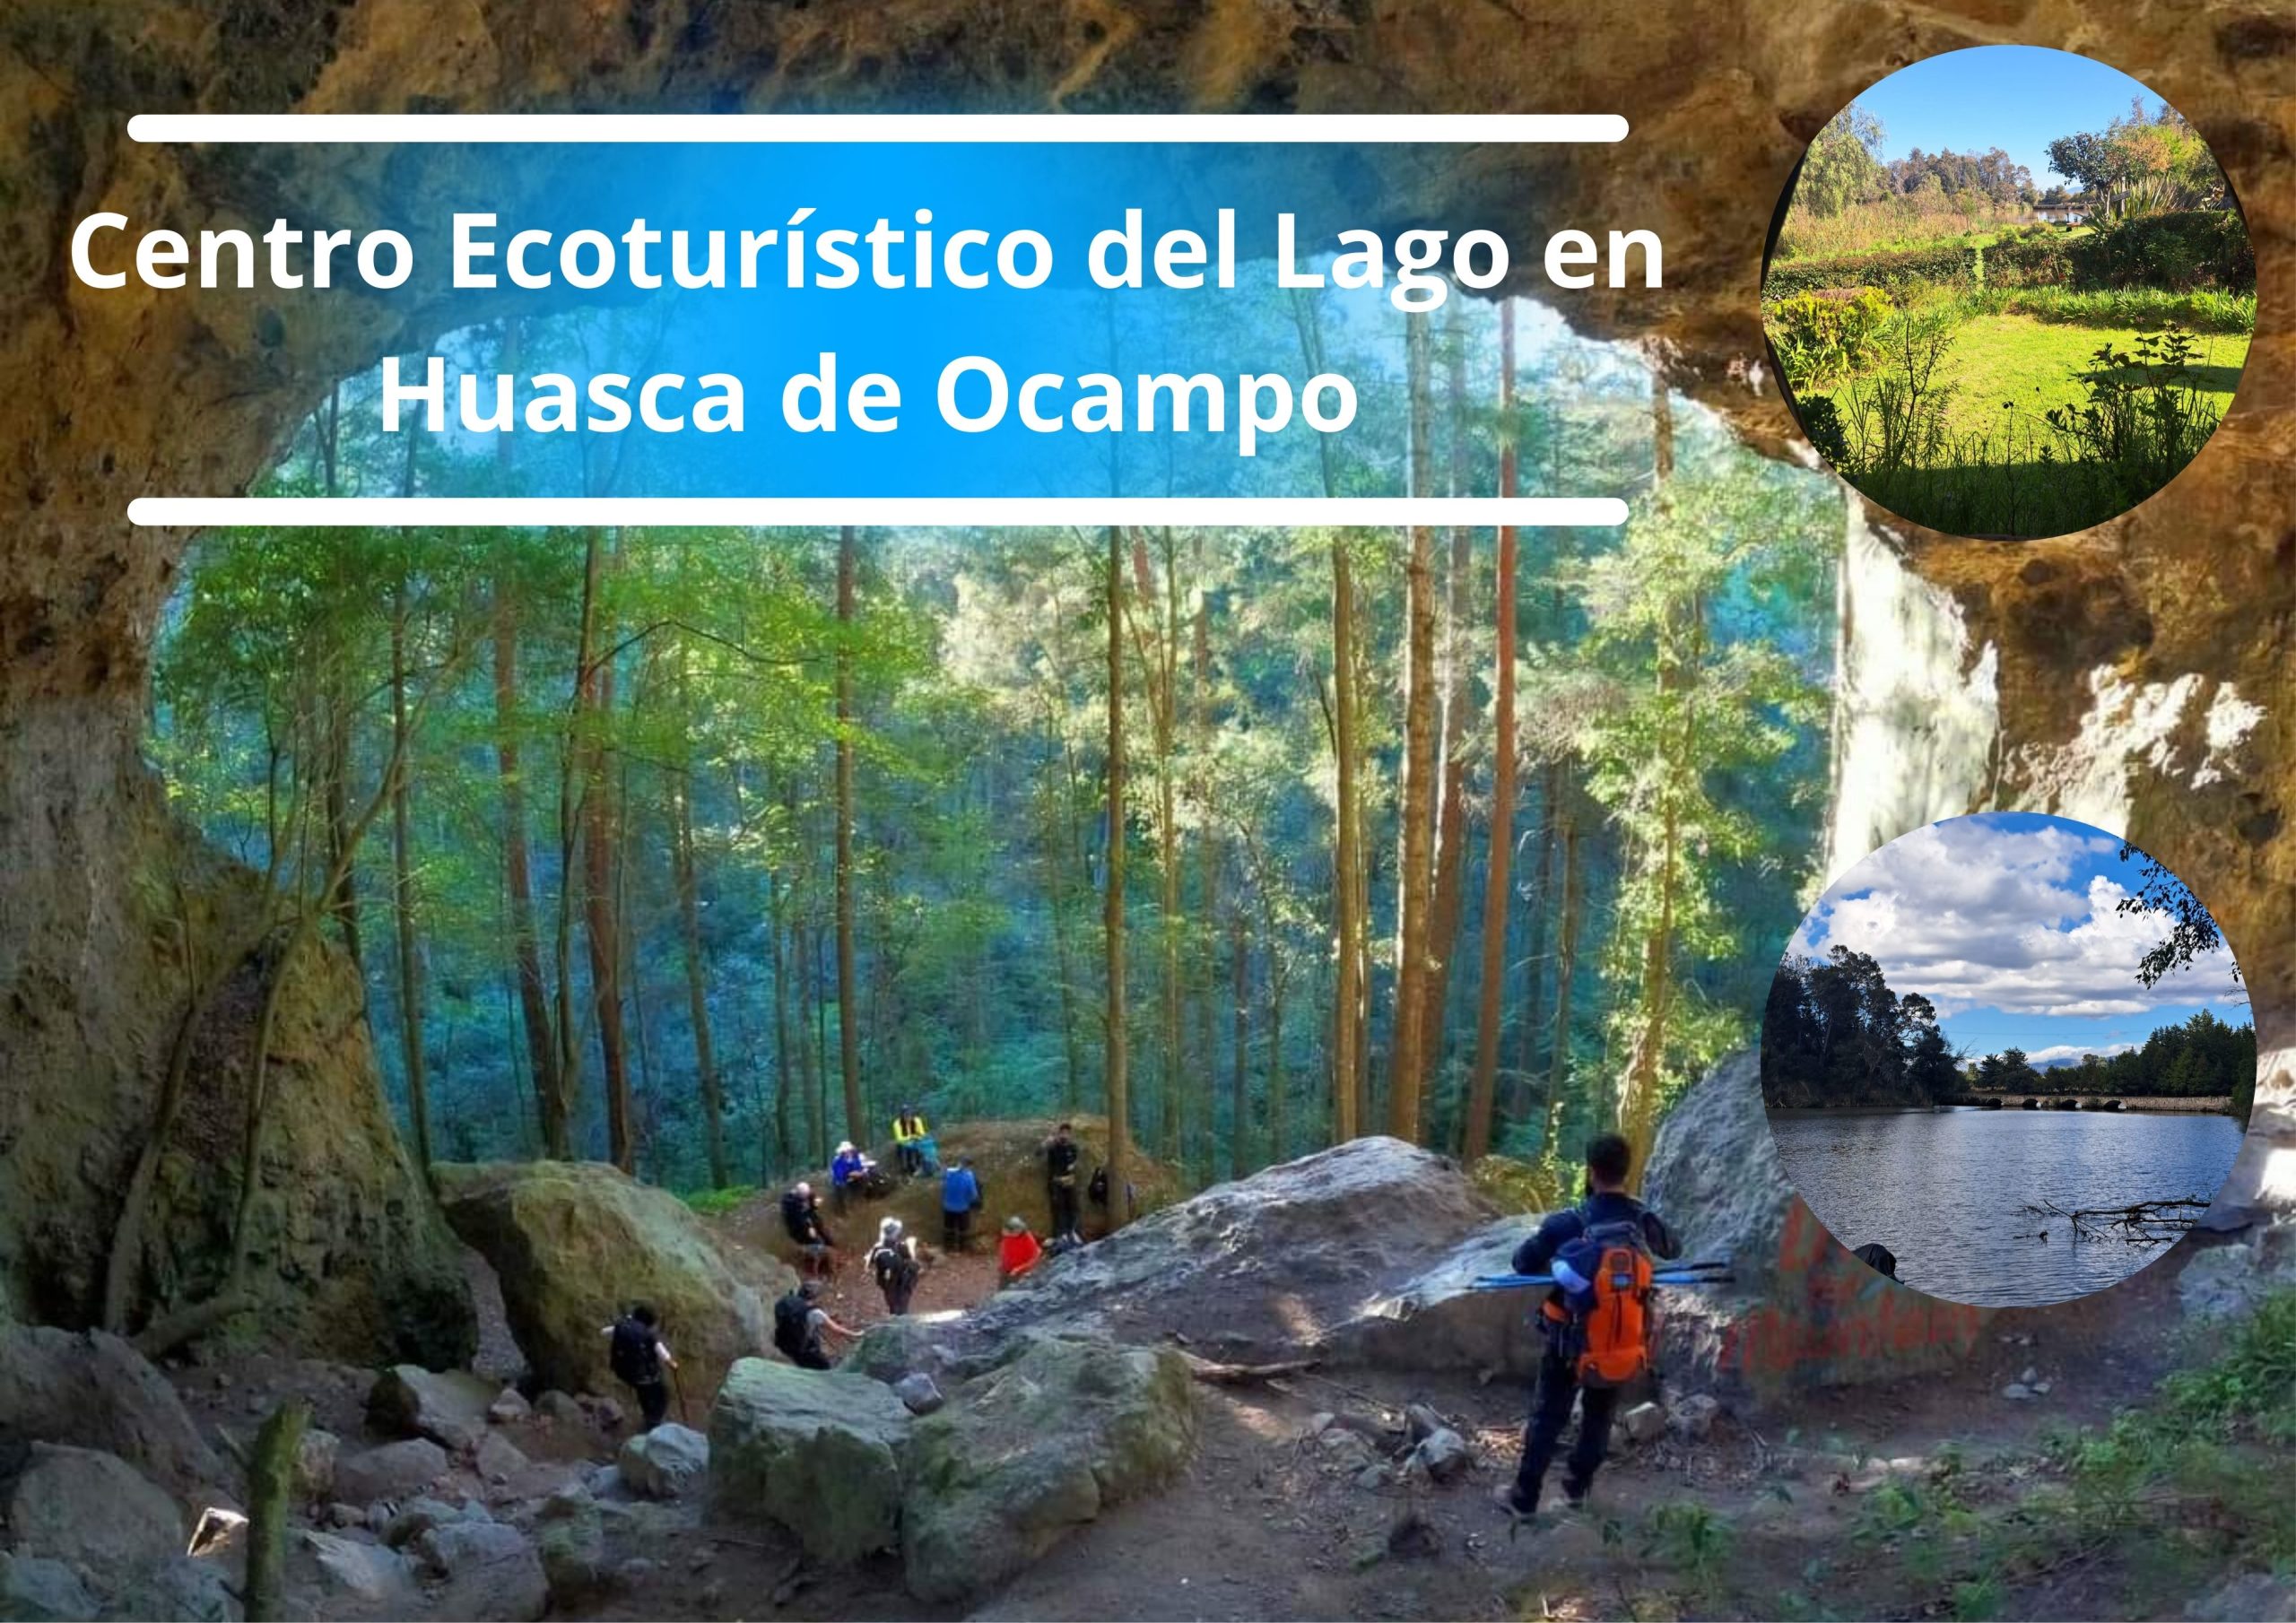 Centro Ecoturístico del Lago en Huasca de Ocampo